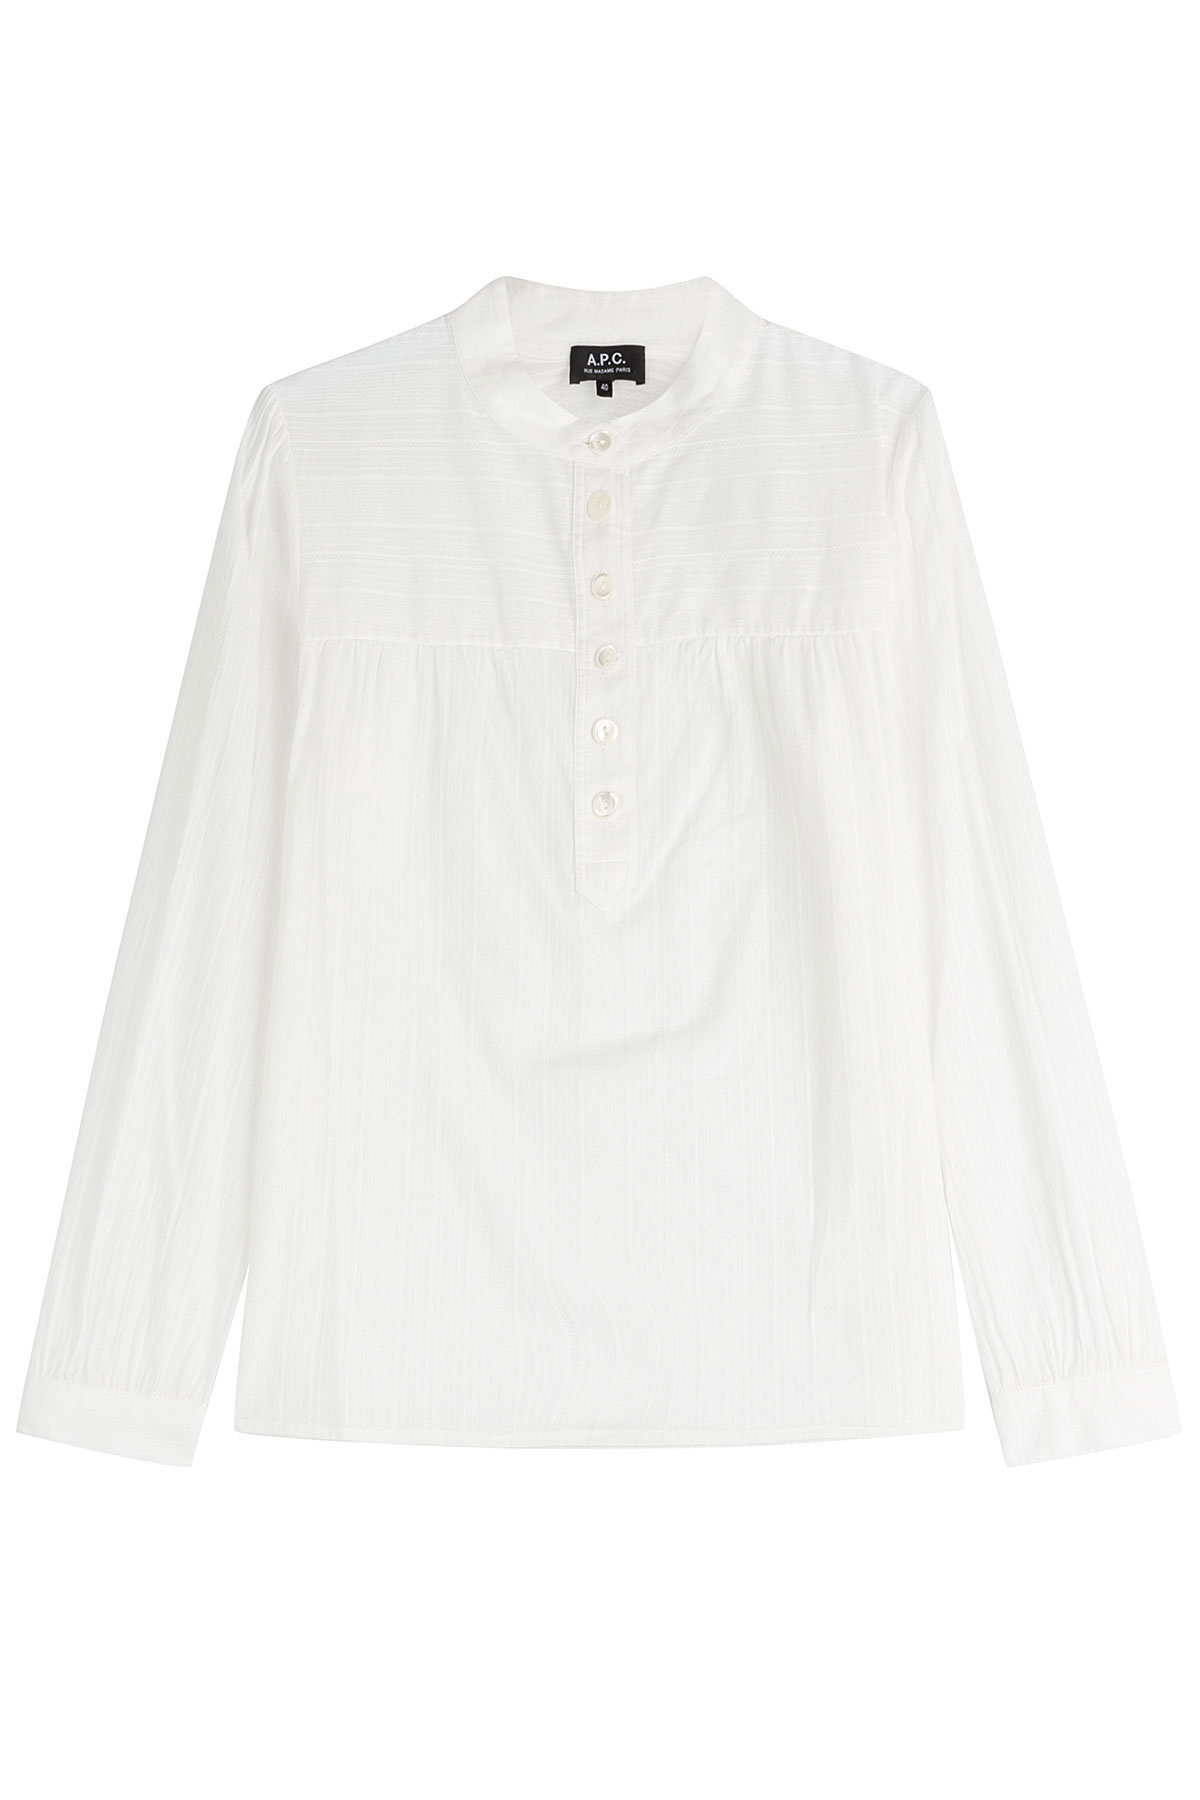 A.P.C. - Long Sleeve Cotton Henley Shirt